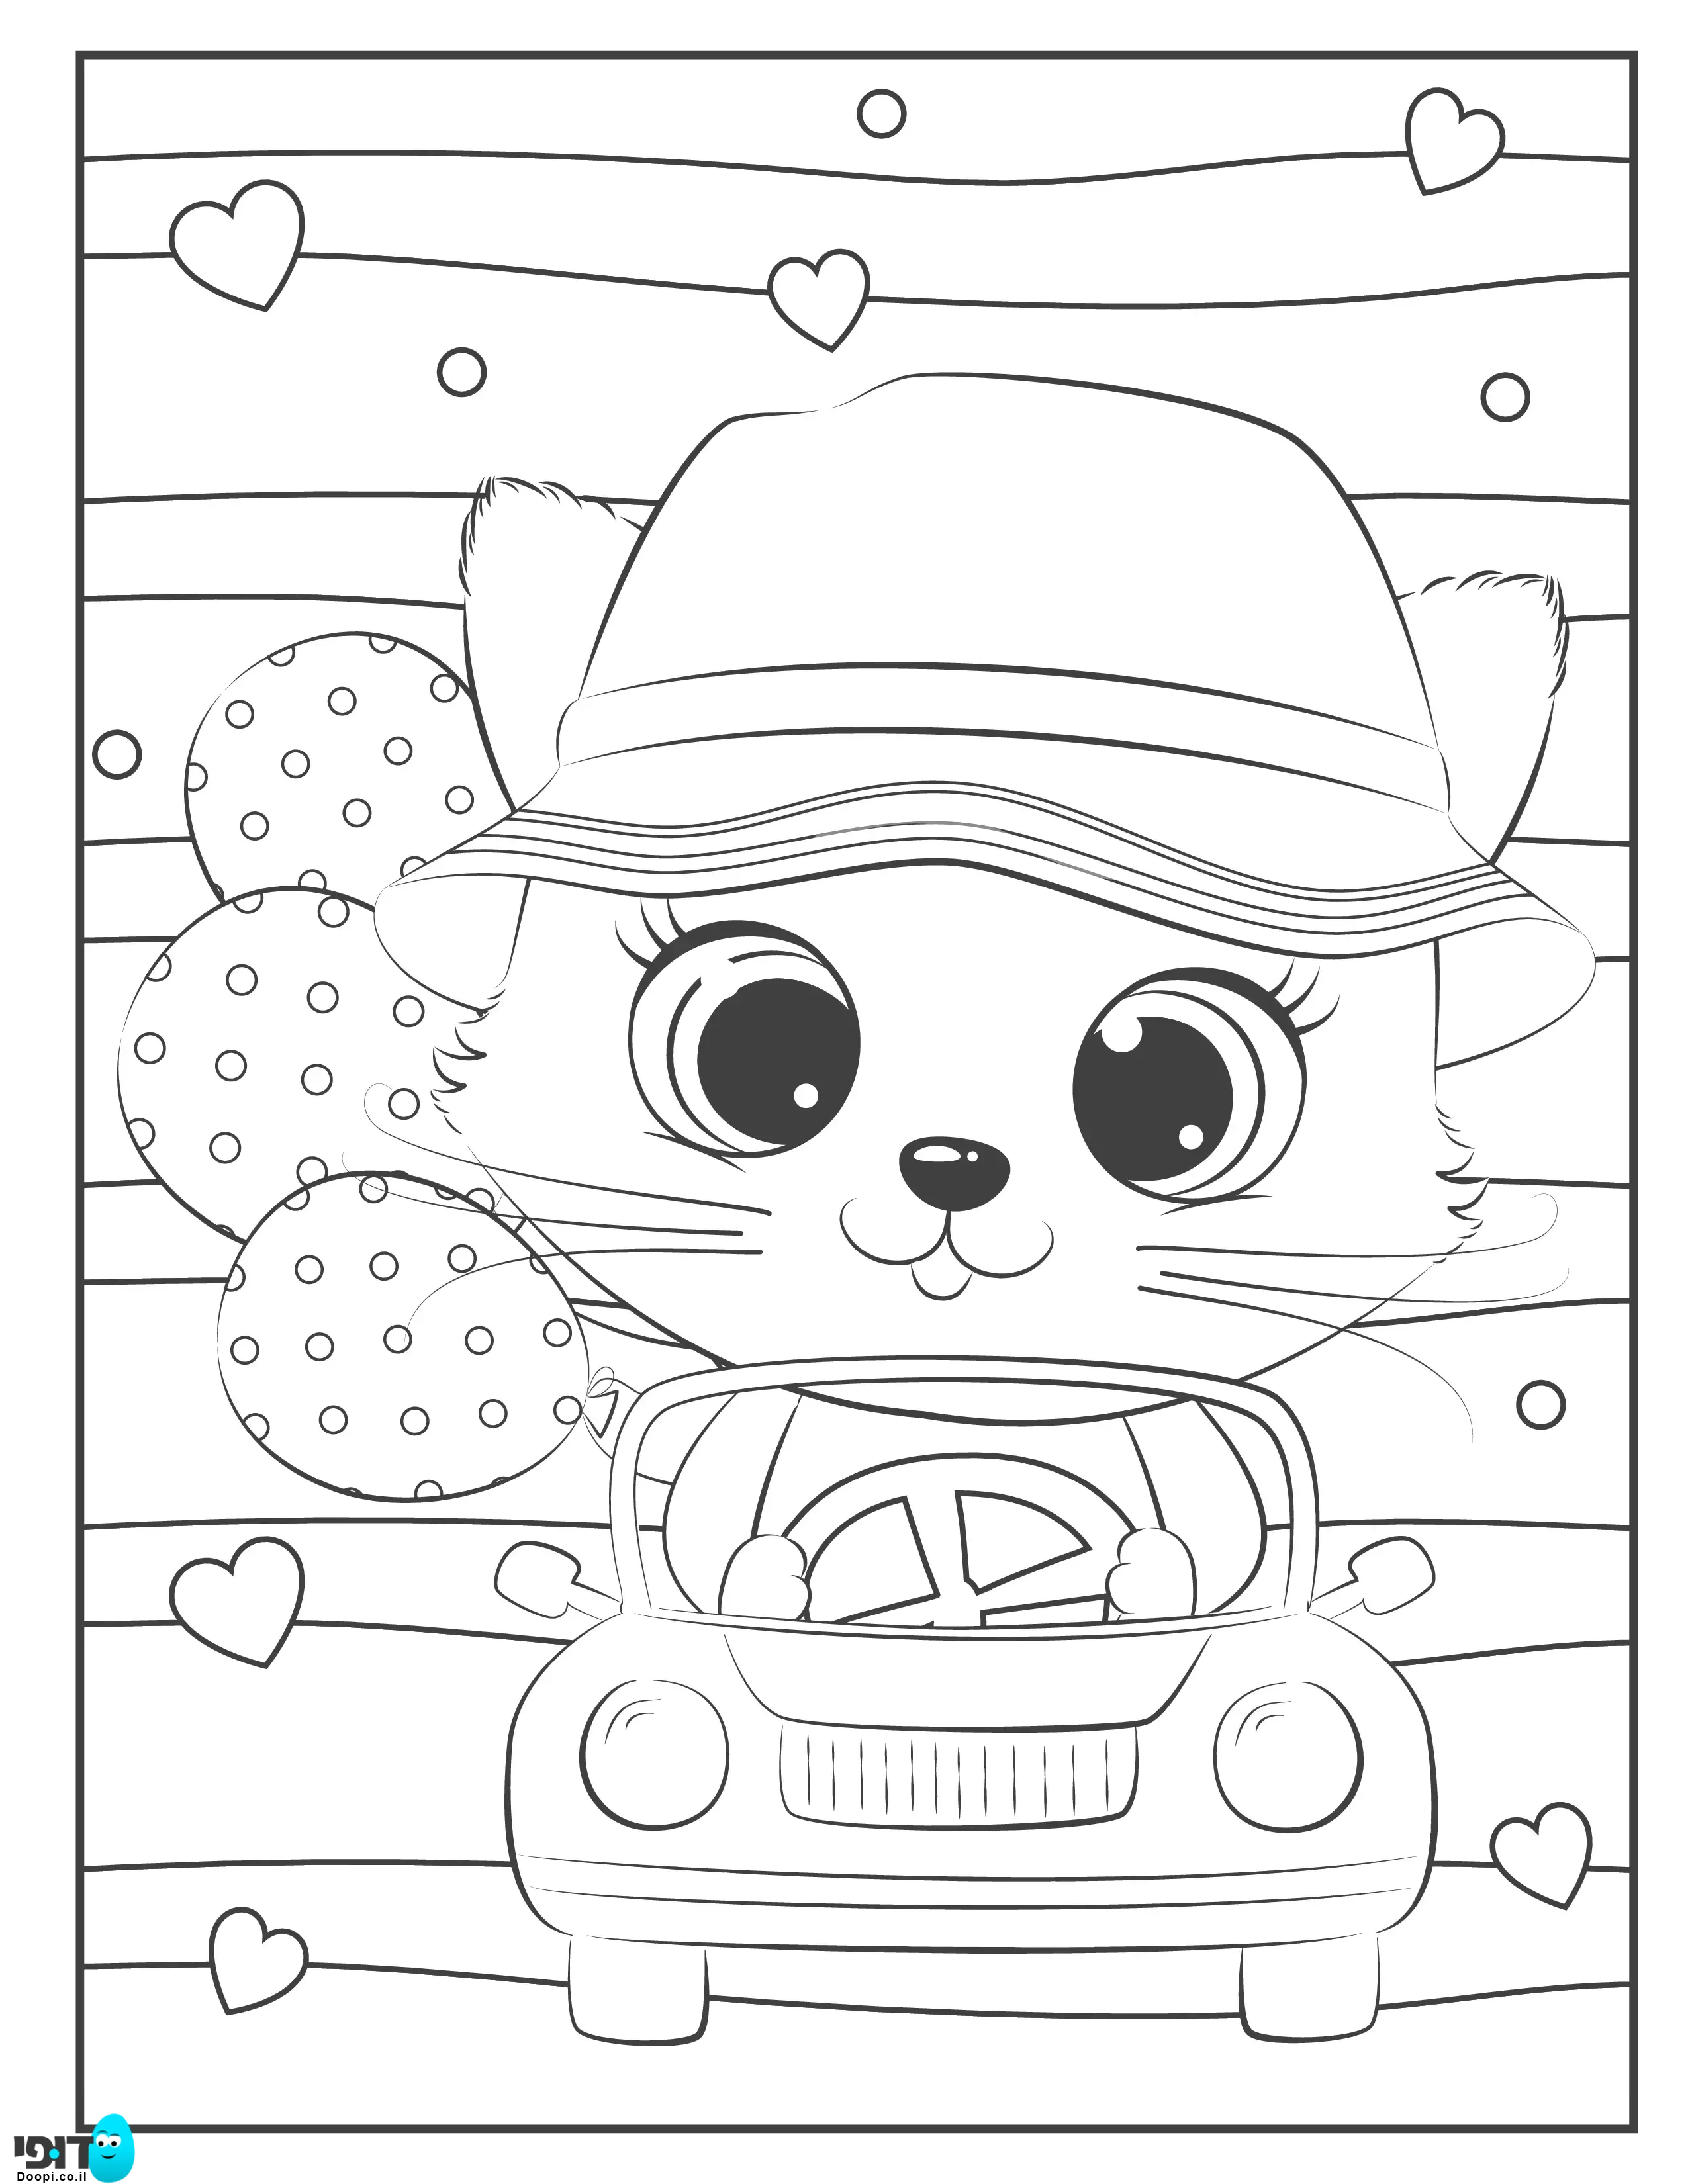 דף צביעה חתול חמוד ברכב